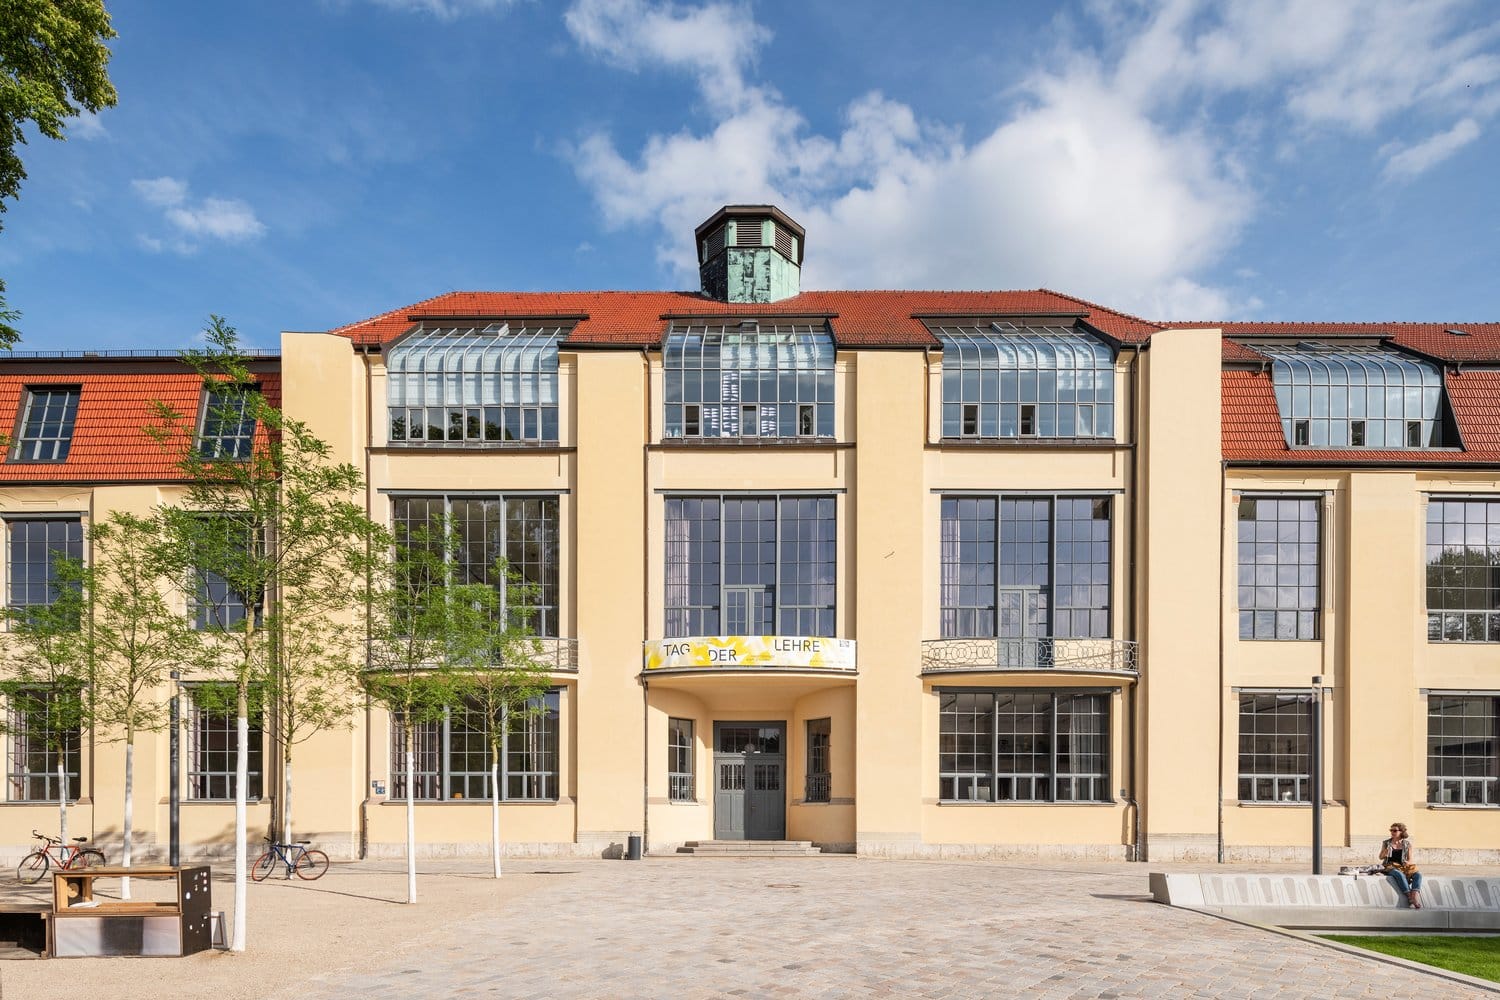 University of Weimar